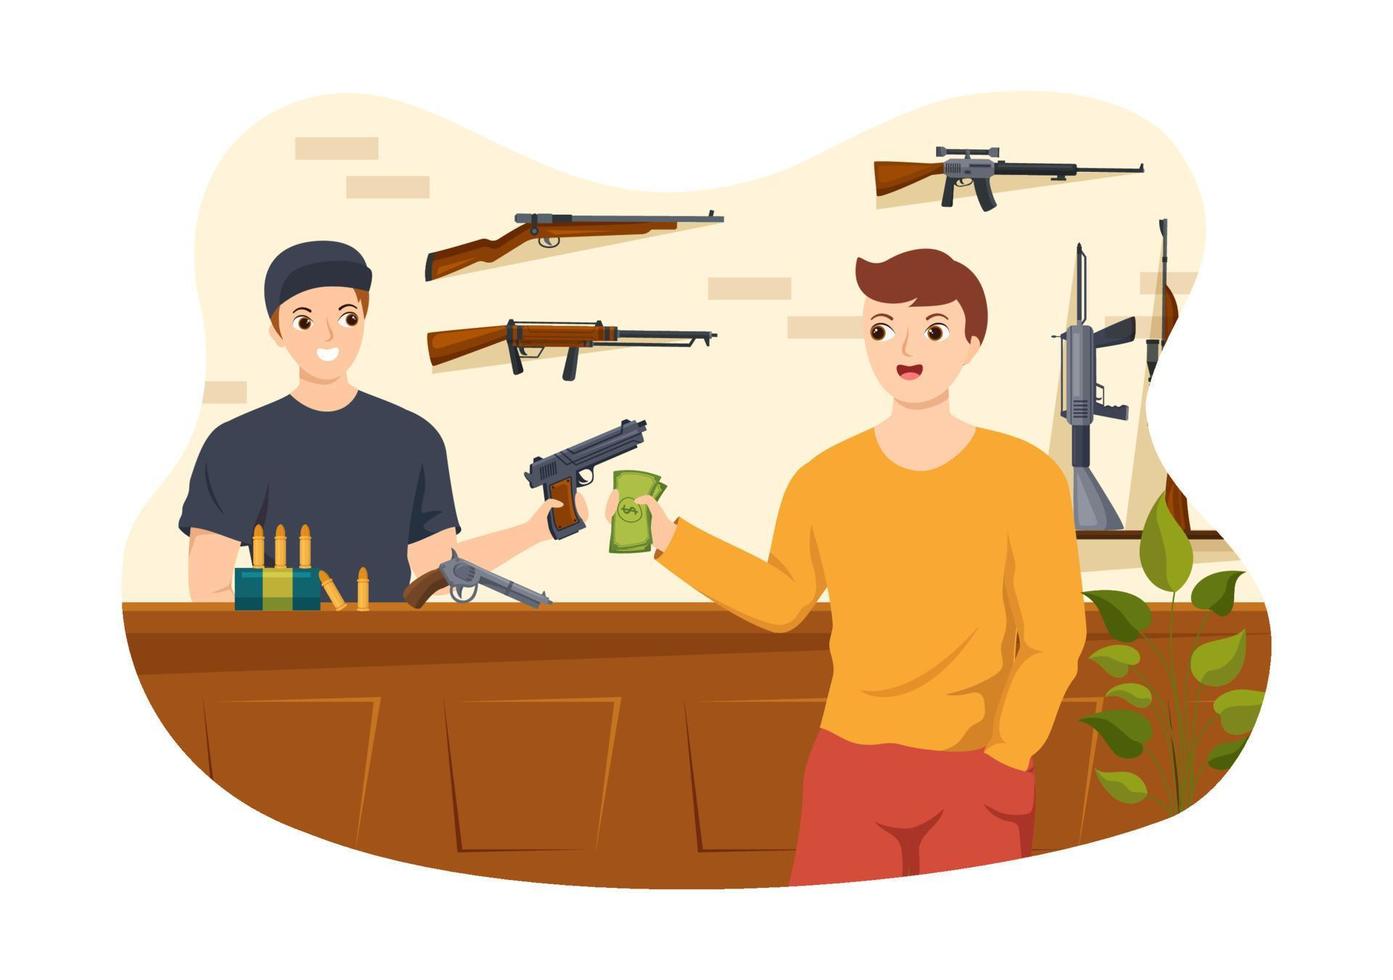 armurerie ou chasse avec fusil, balle, arme et équipement de chasse dans un dessin animé de style plat illustration de modèles dessinés à la main vecteur